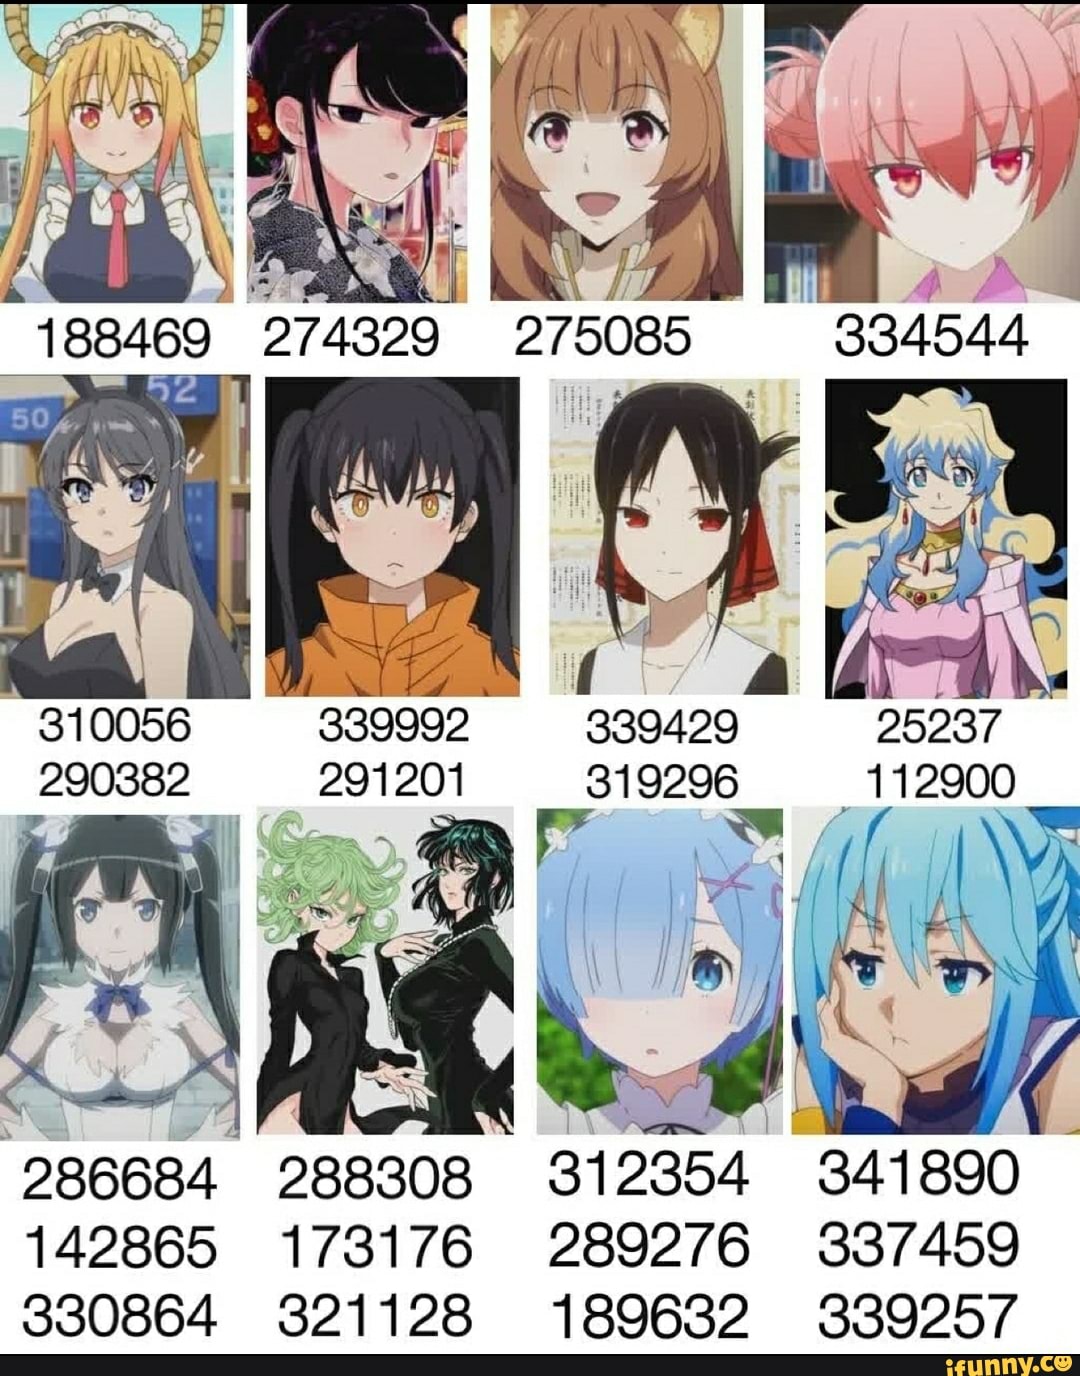 286684 manga